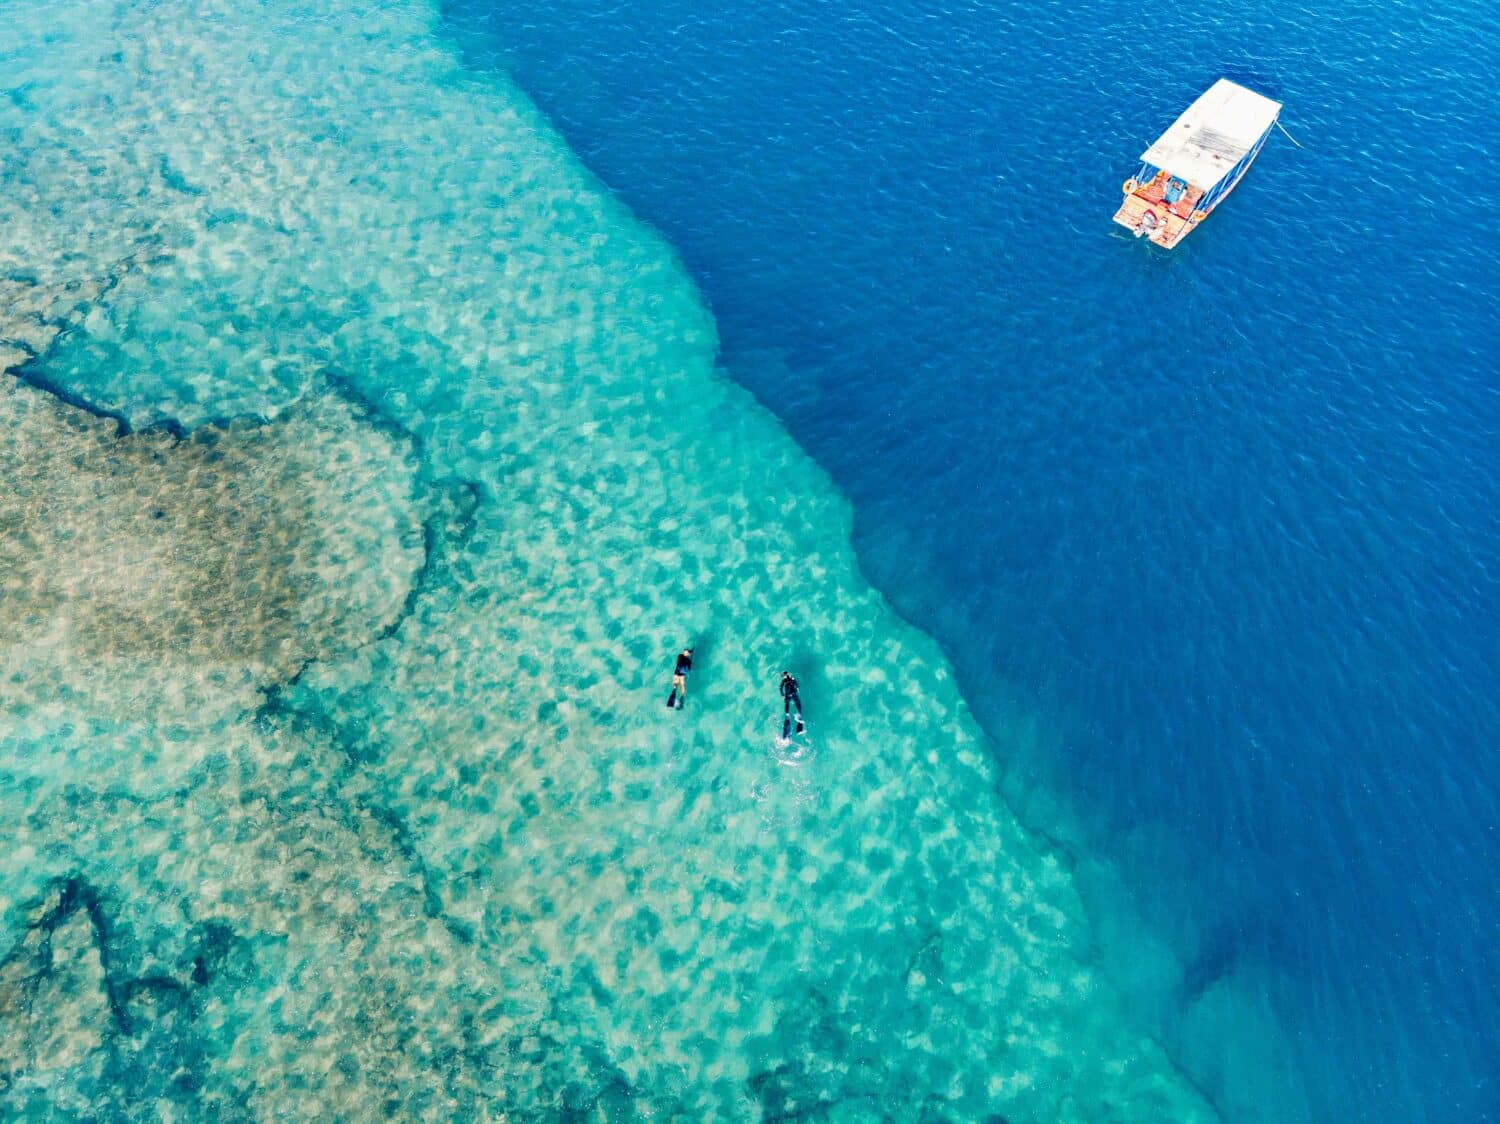 Vista aérea de dois mergulhadores e um barco no mar de águas transparentes, em Marechal Deodoro, na praia do Francês